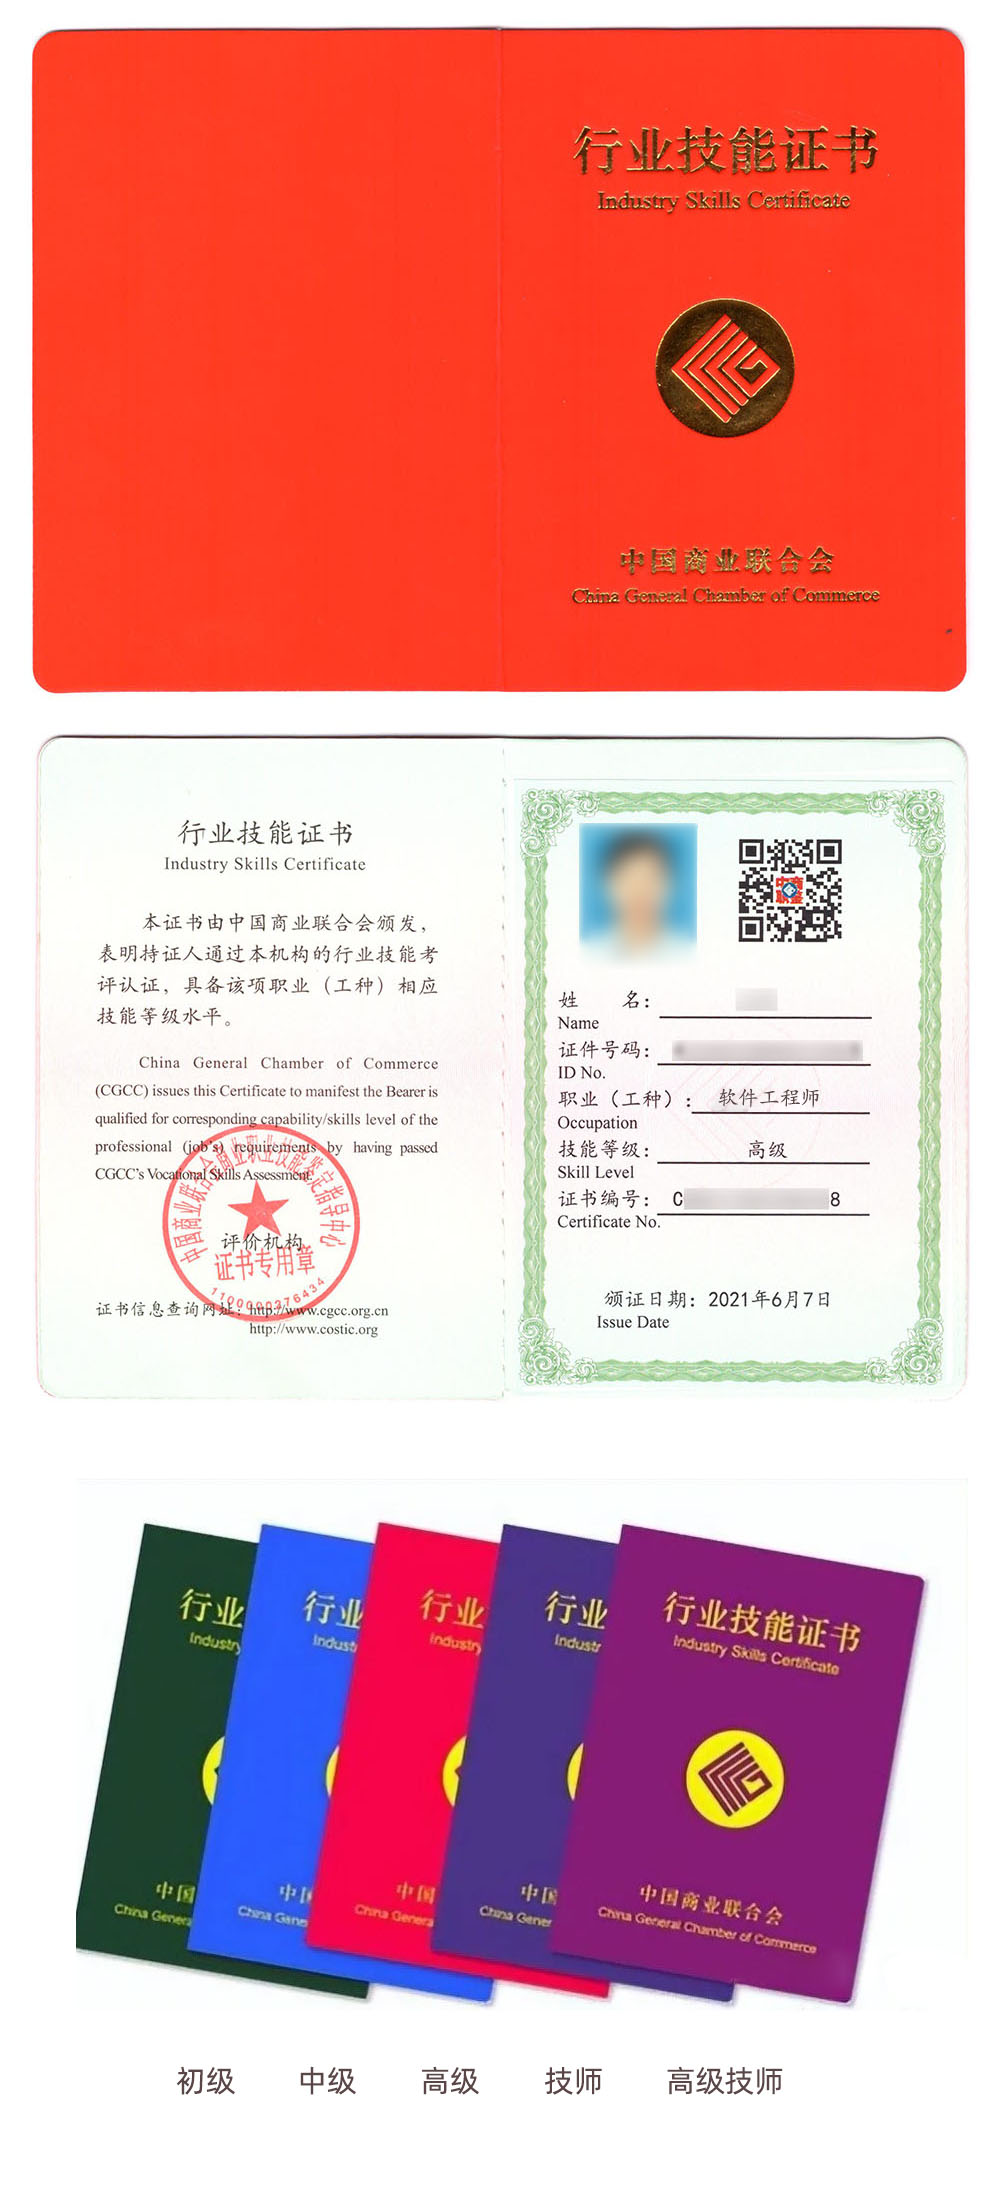 中国商业联合会商业职业技能鉴定指导中心 行业技能证书 软件工程师证证书样本